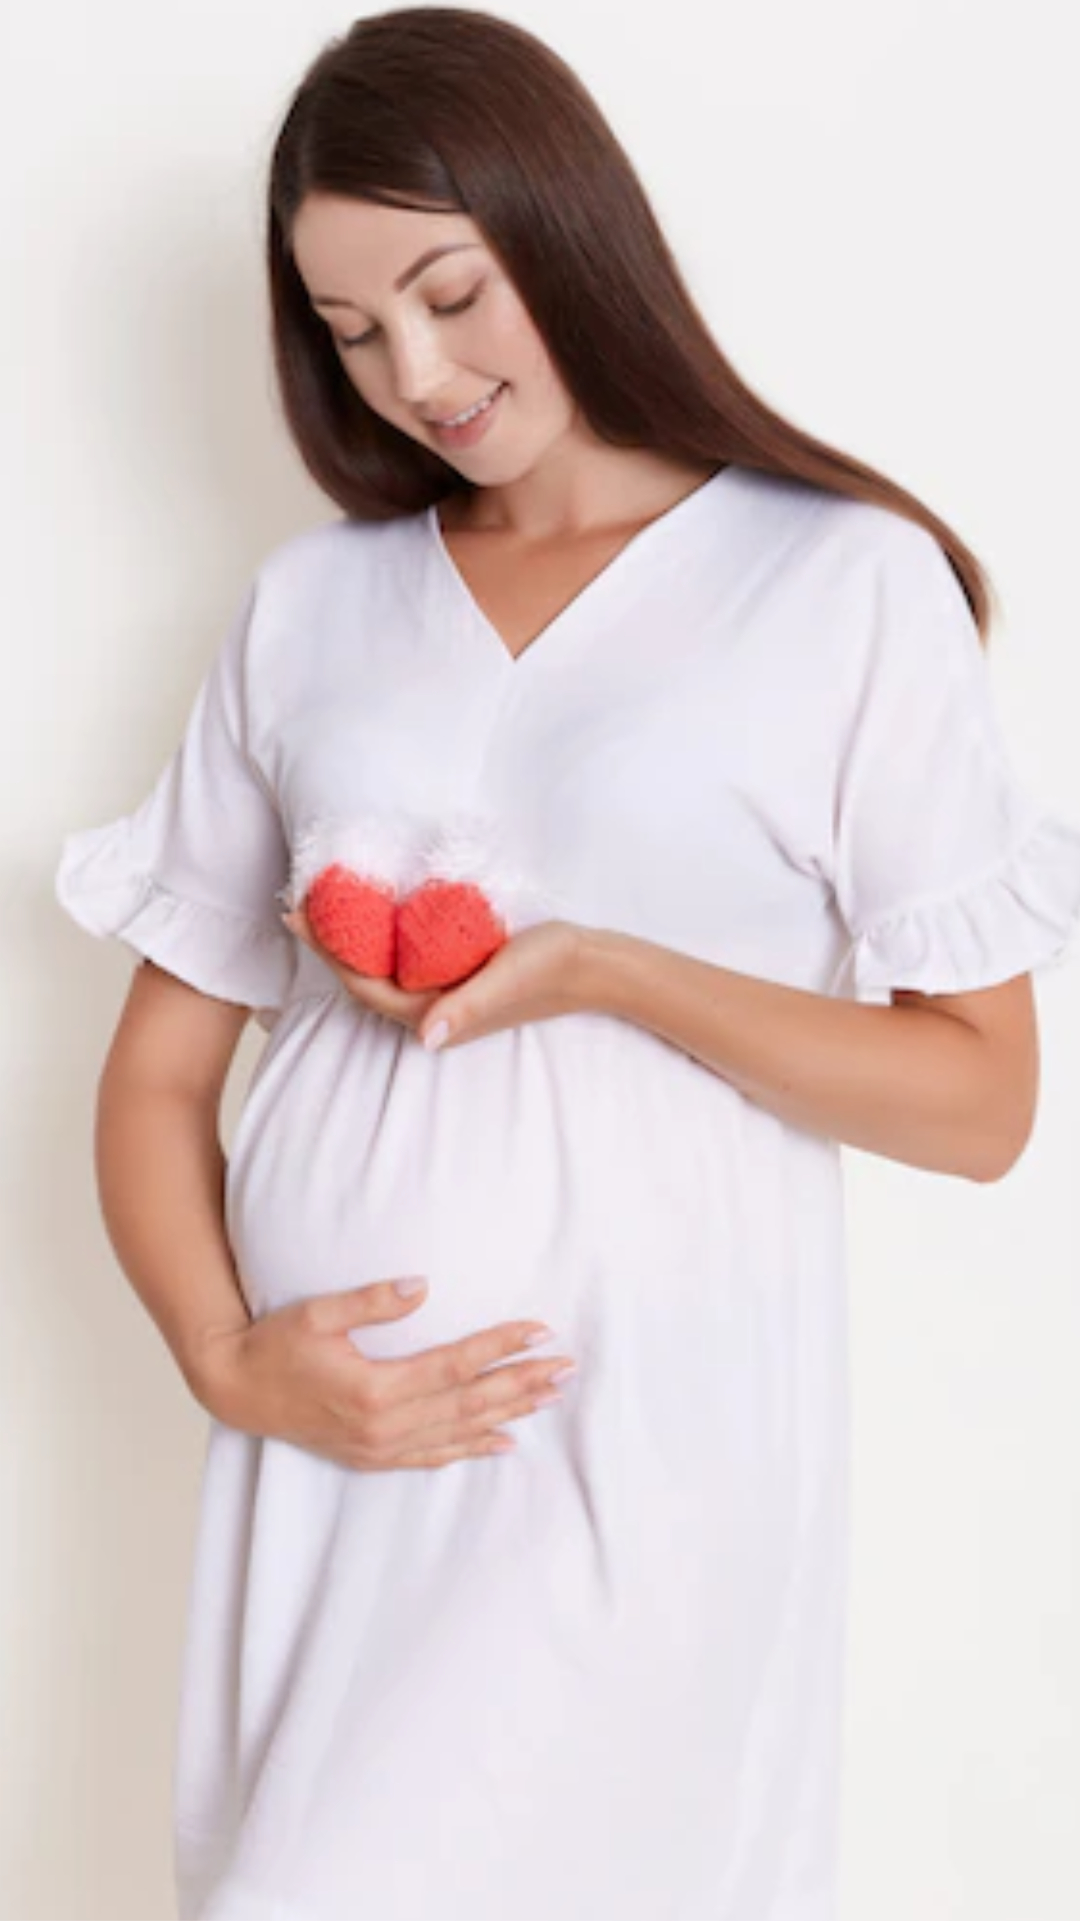 Pregnancy Tips: प्रेग्नेंसी में ना खाएं ये 5 चीजें, हो सकता है नुकसान 